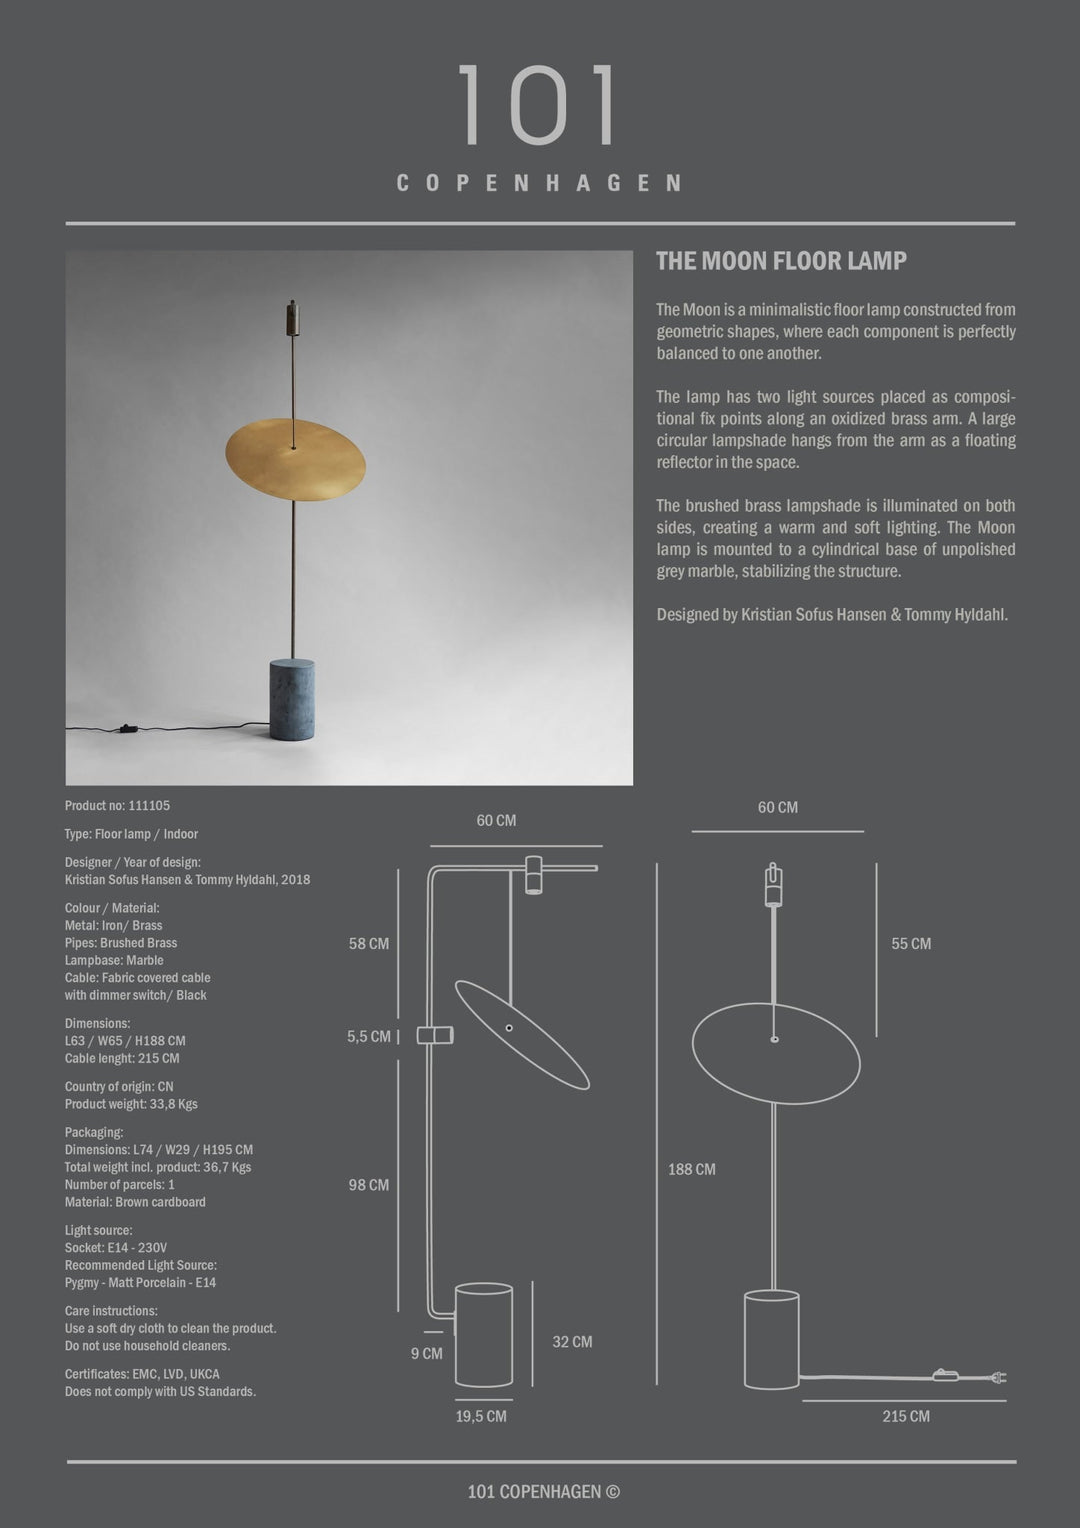 101 Copenhagen The Moon Floor Lamp - $2,195.00